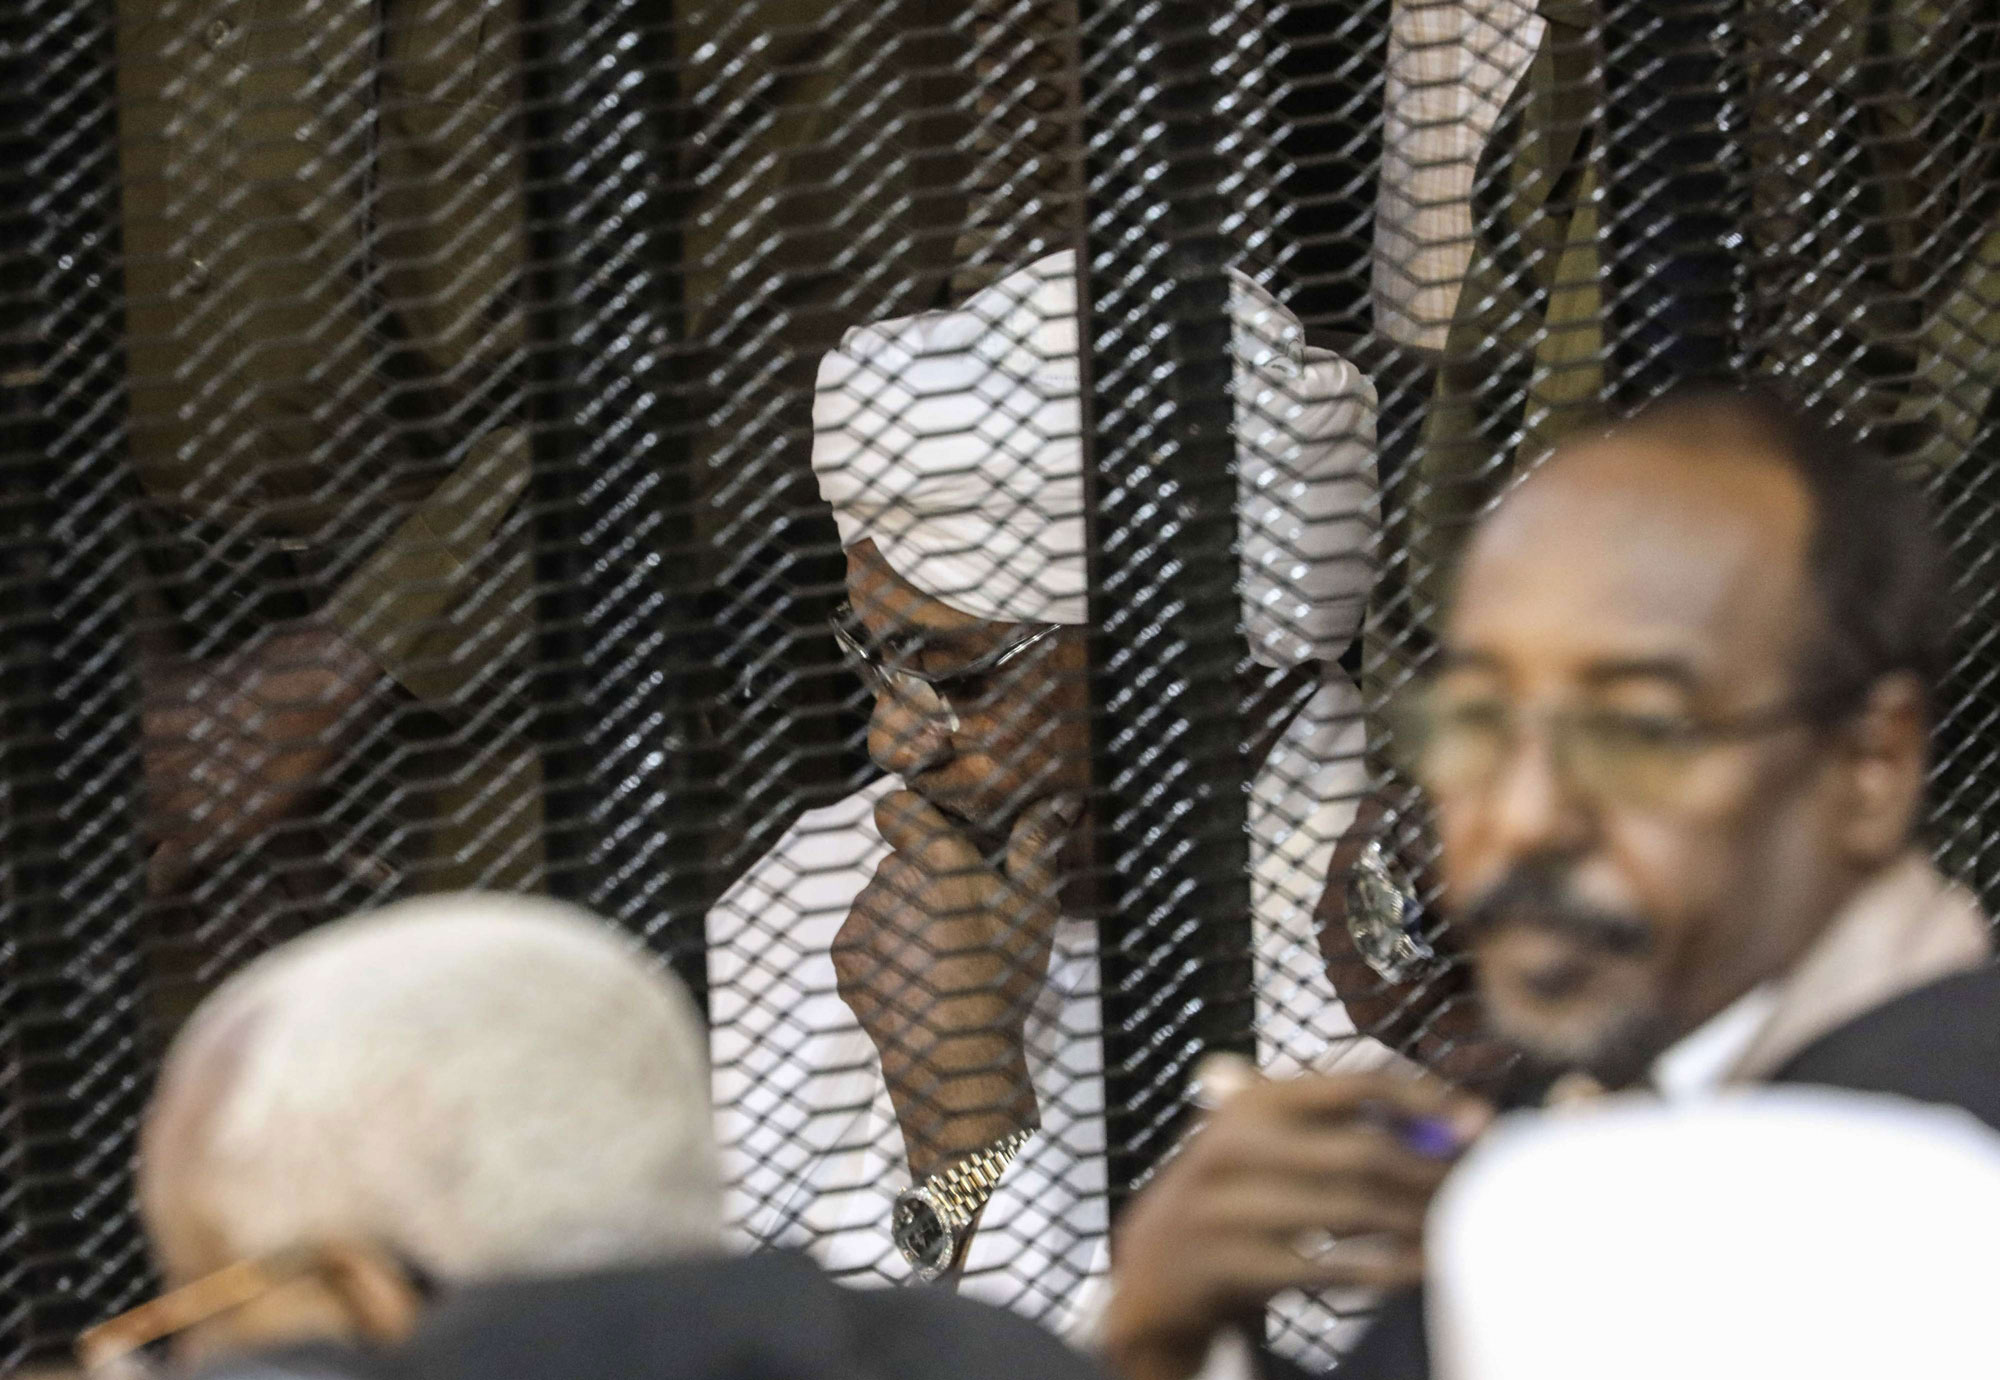 الرئيس السوداني المعزول عمر البشير